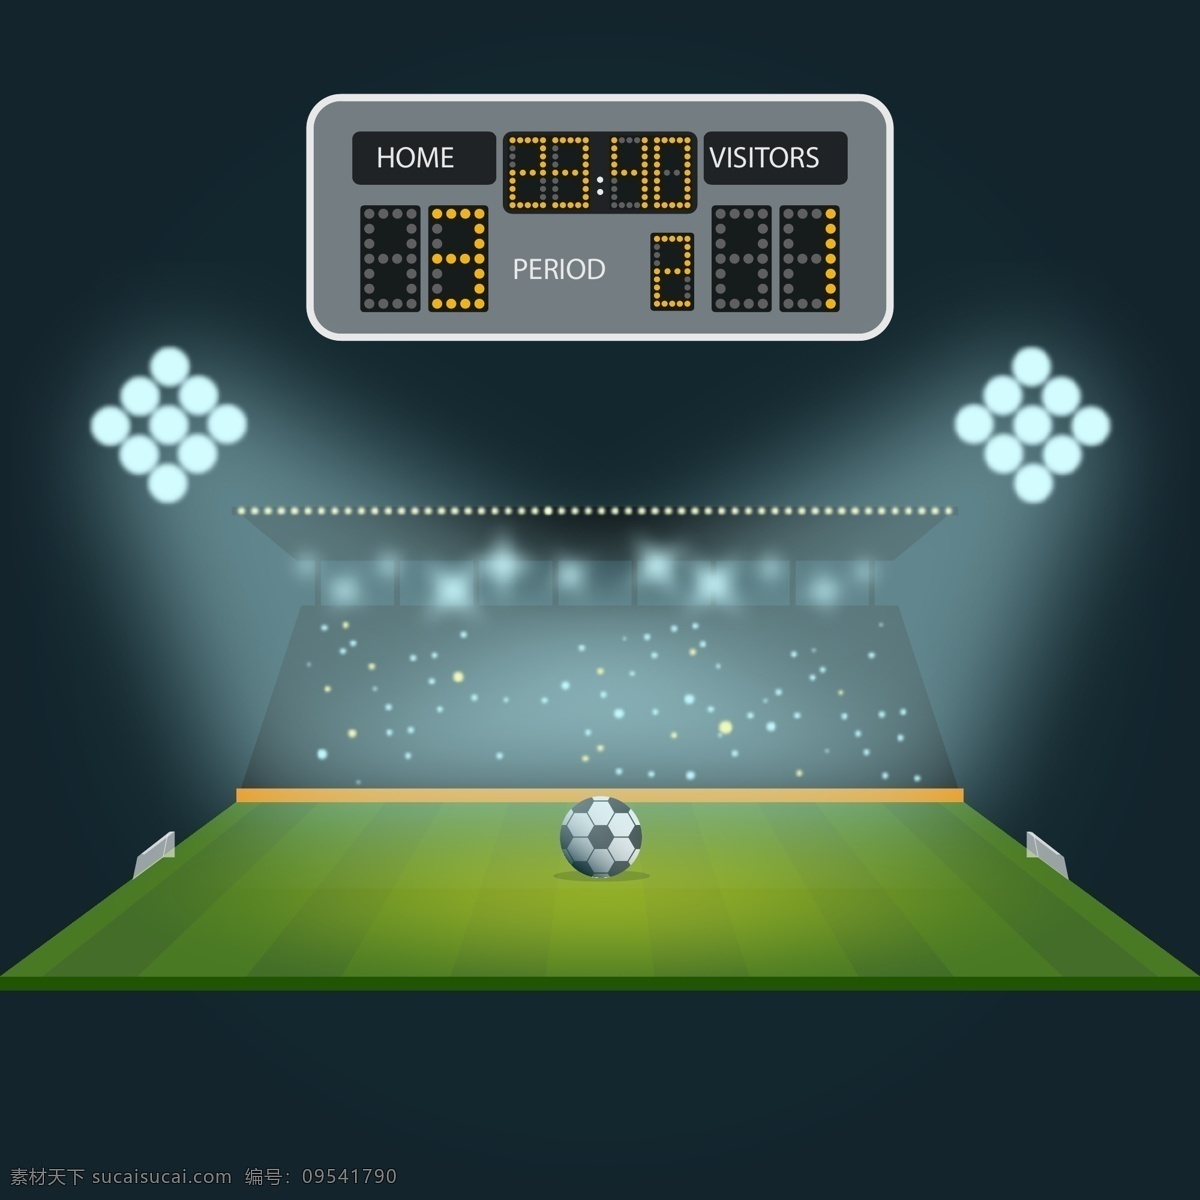 世界杯 足球比赛 足球 足球矢量图 足球元素 足球设计